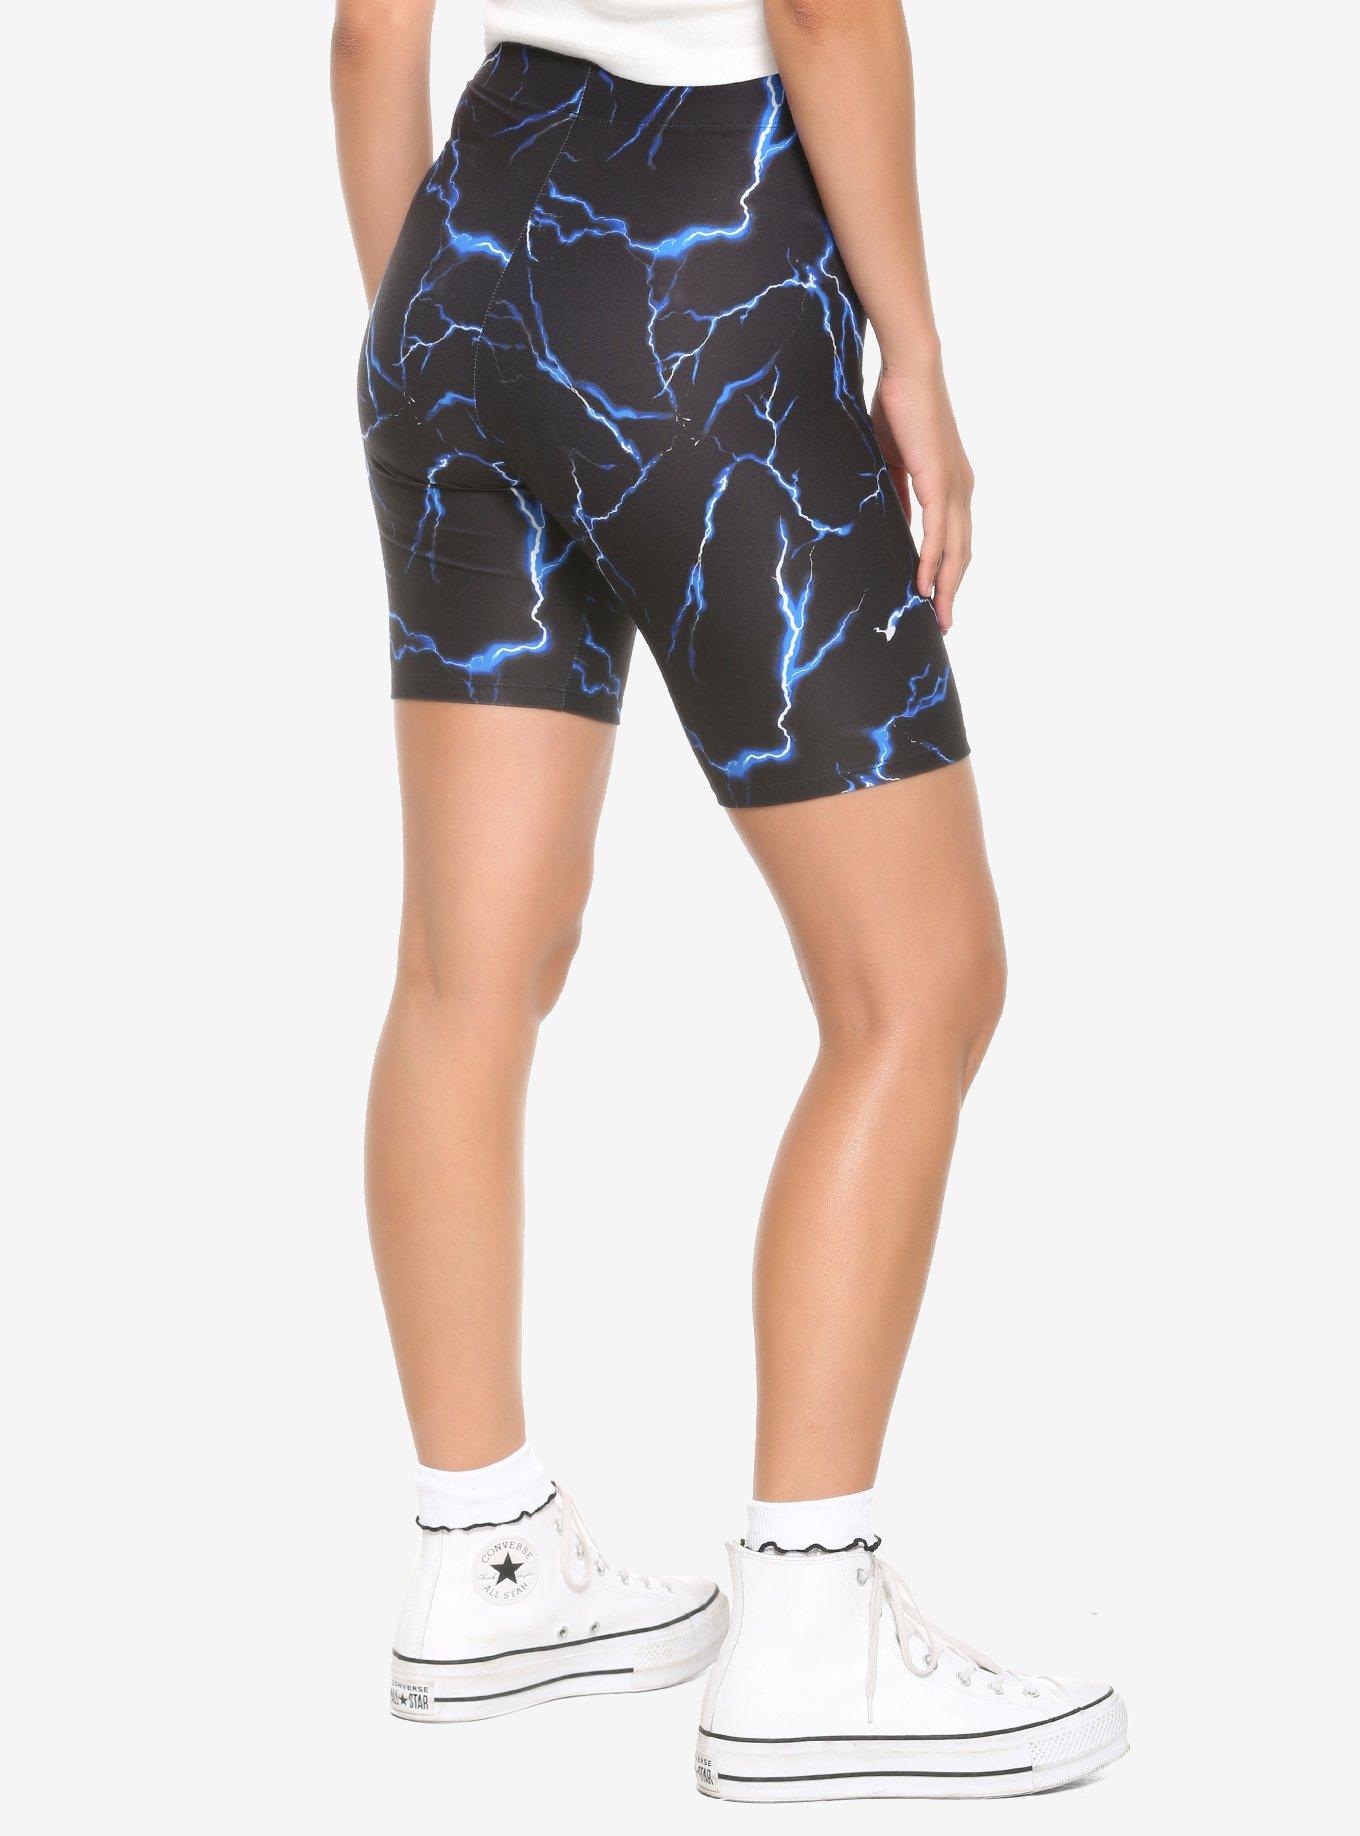 Blue Lightning Girls Bike Shorts, BLACK, alternate